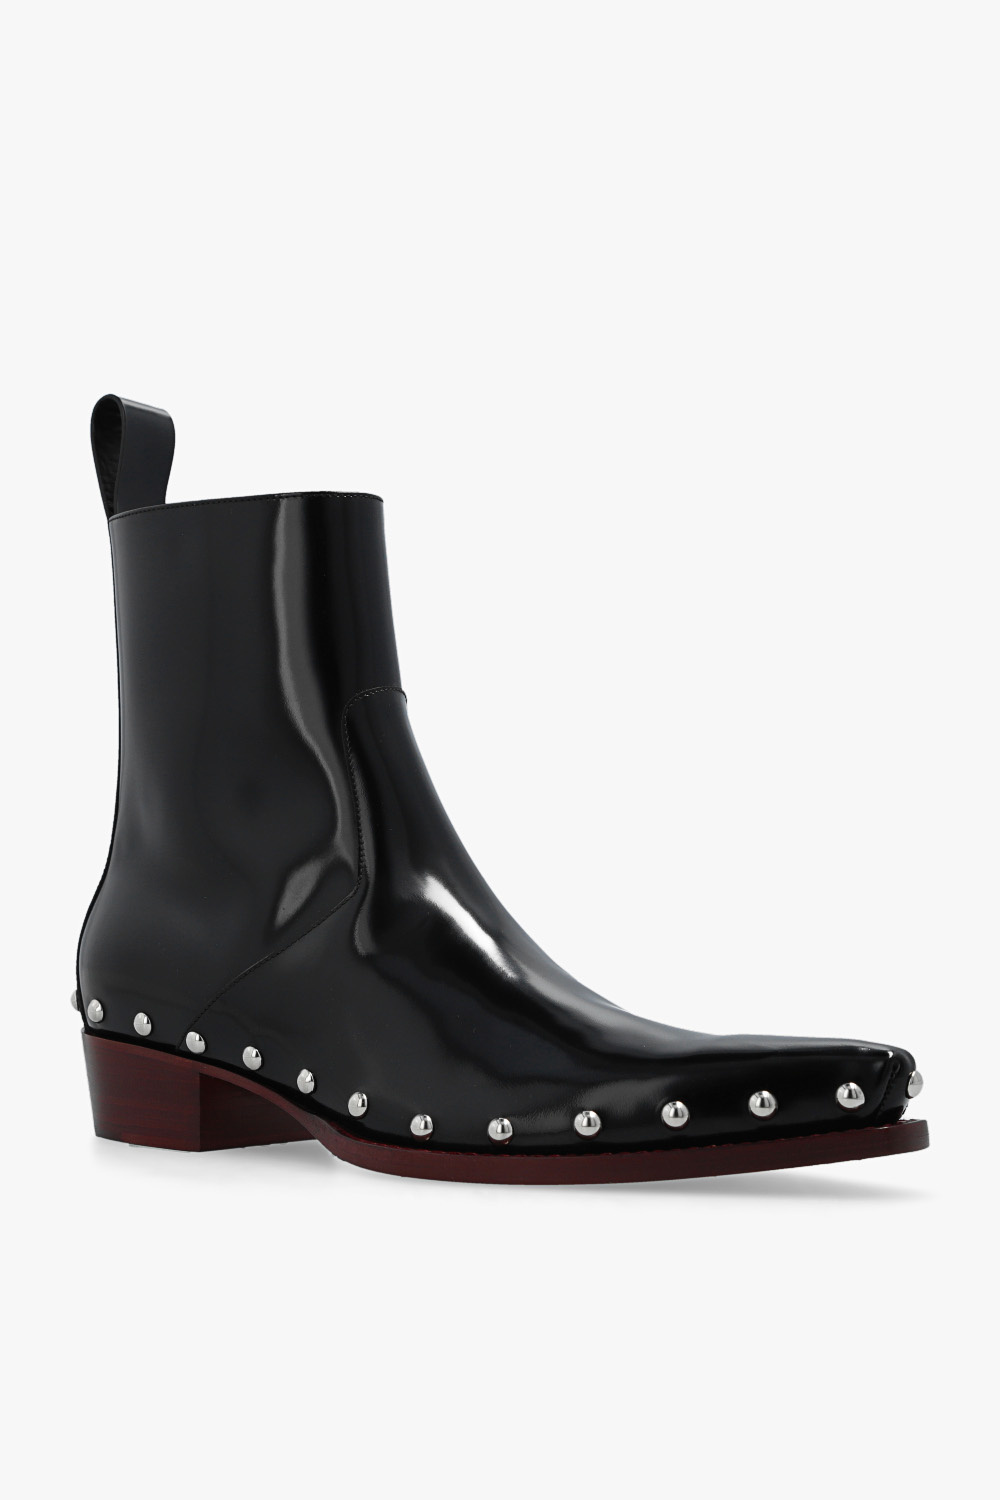 bottega amp Veneta ‘Ripley’ heeled ankle boots